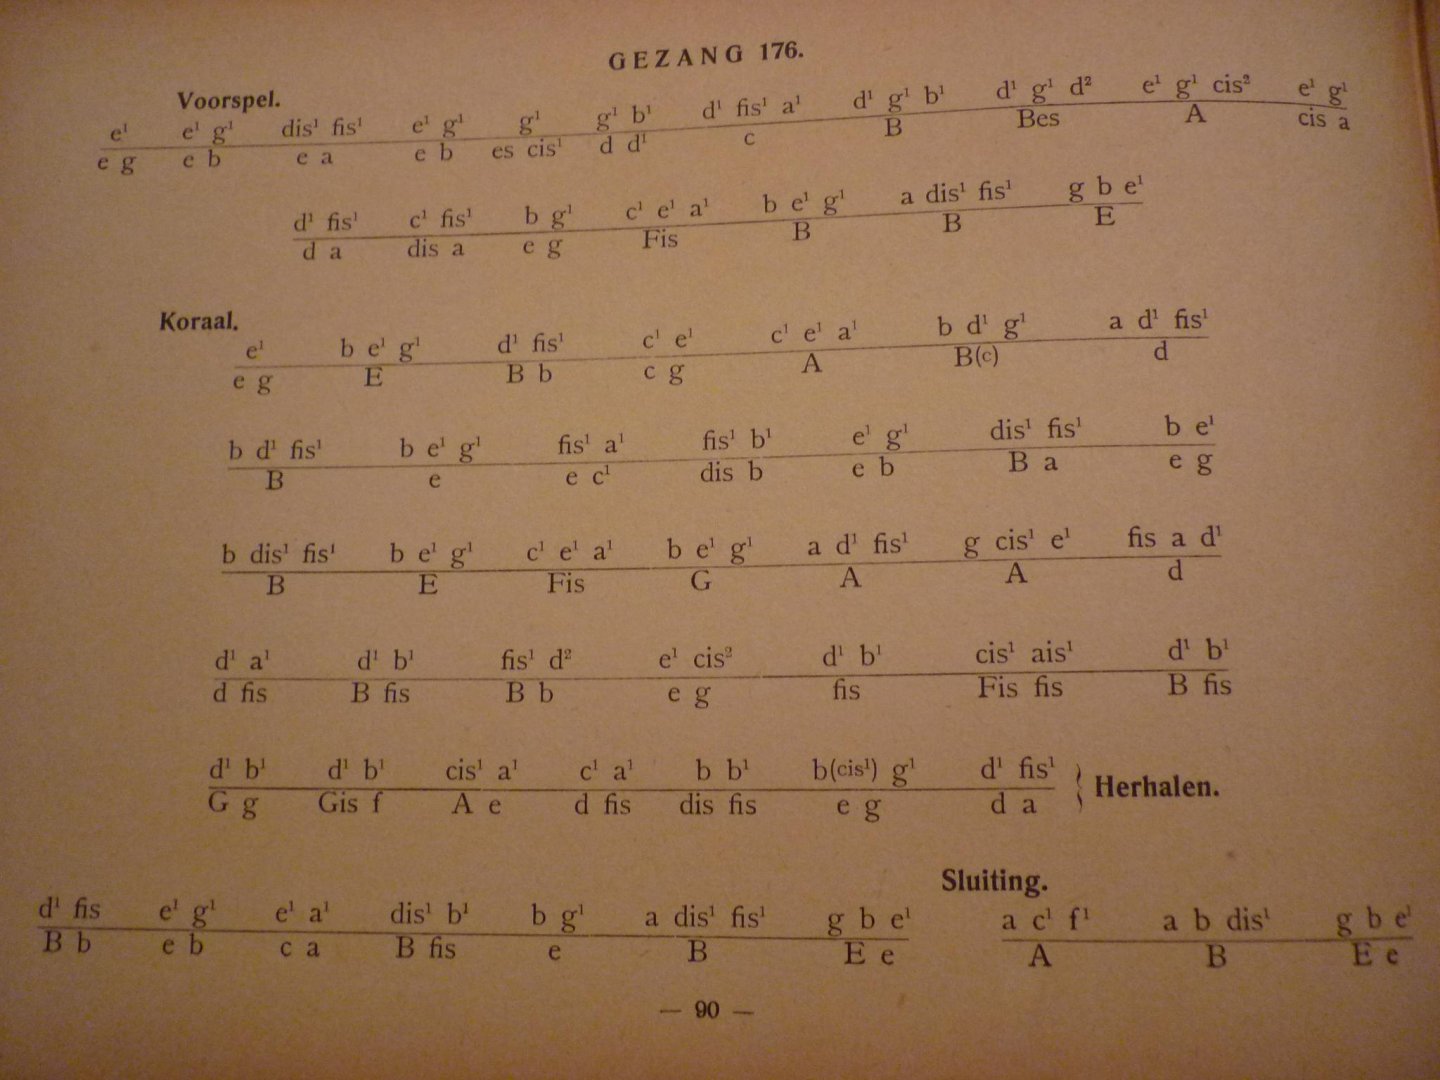 Doortmont; L. - Melodieen der Evangelische Gezangen + Vervolgbundel; Akkoorden in letters, voor orgel bewerkt